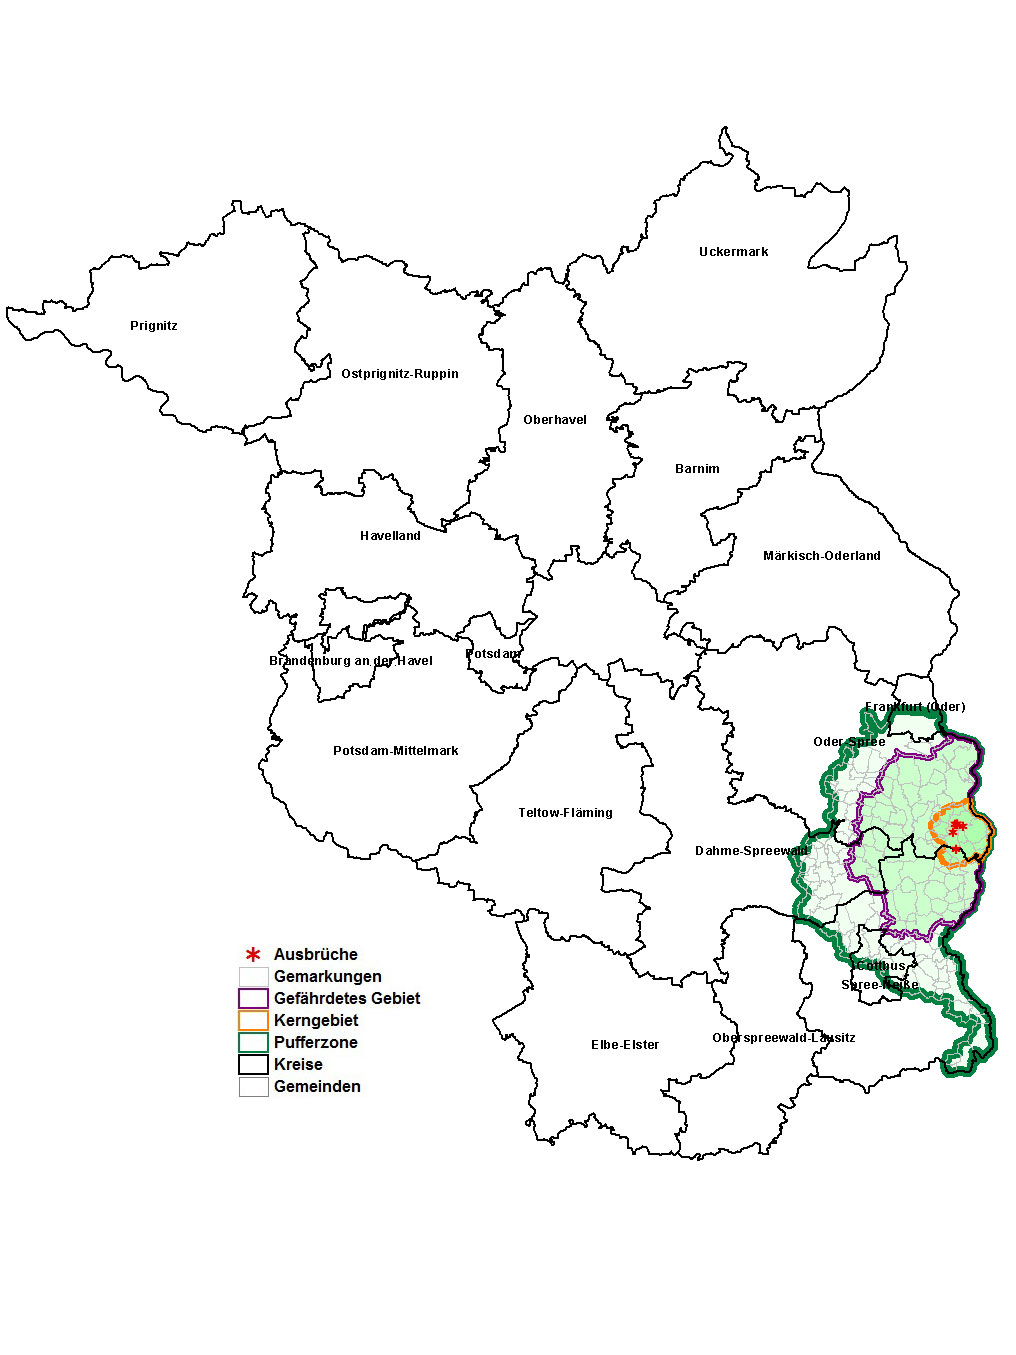 ASP: Restriktionszonen in Brandenburg